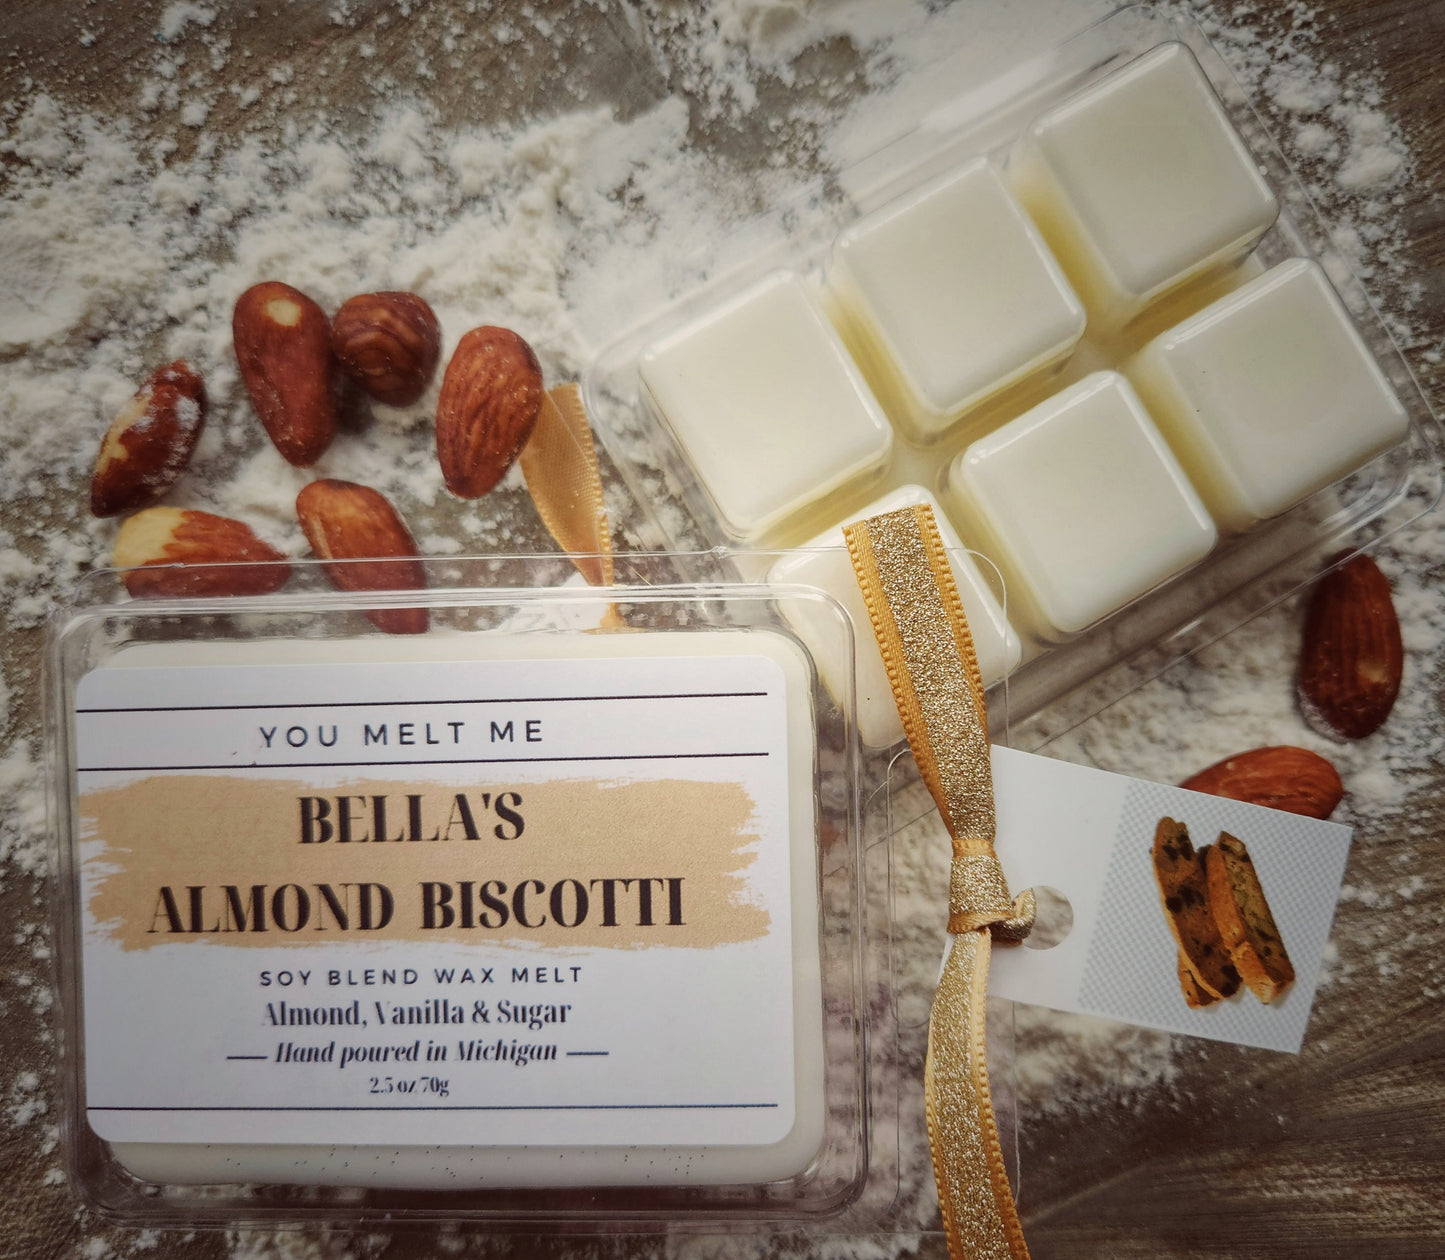 Bella's Almond Biscotti